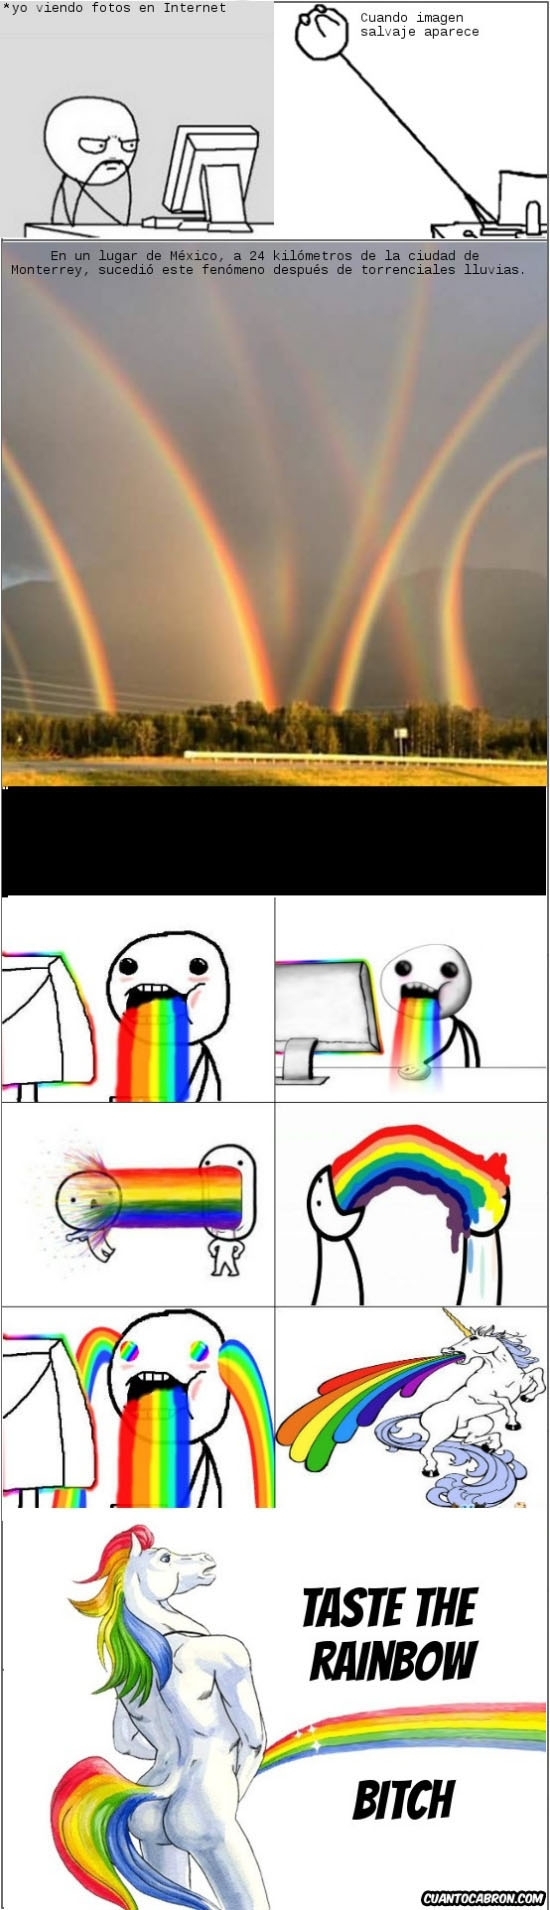 Puke_rainbows - Un fenómeno extraordinario